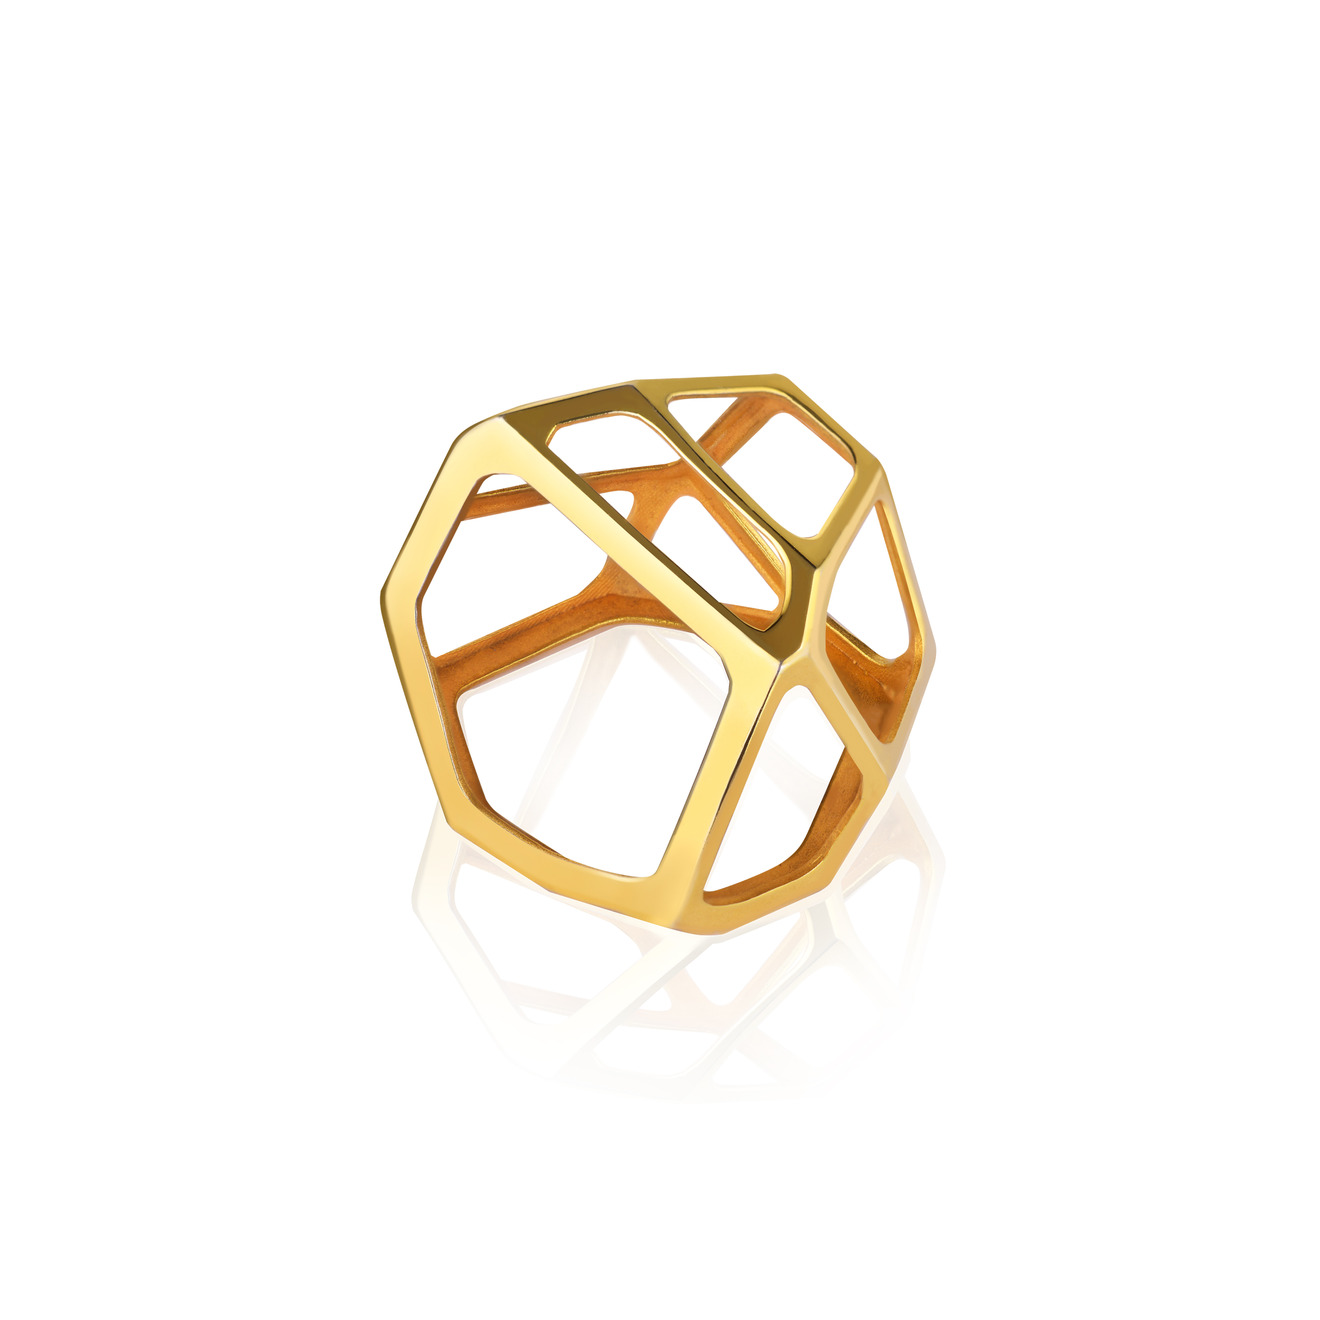 Vertigo Jewellery Lab Позолоченное безразмерное кольцо-подвеска из серебра “CELL MONO” vertigo jewellery lab позолоченное кольцо сleoptr ladybug ring из серебра с речным жемчугом